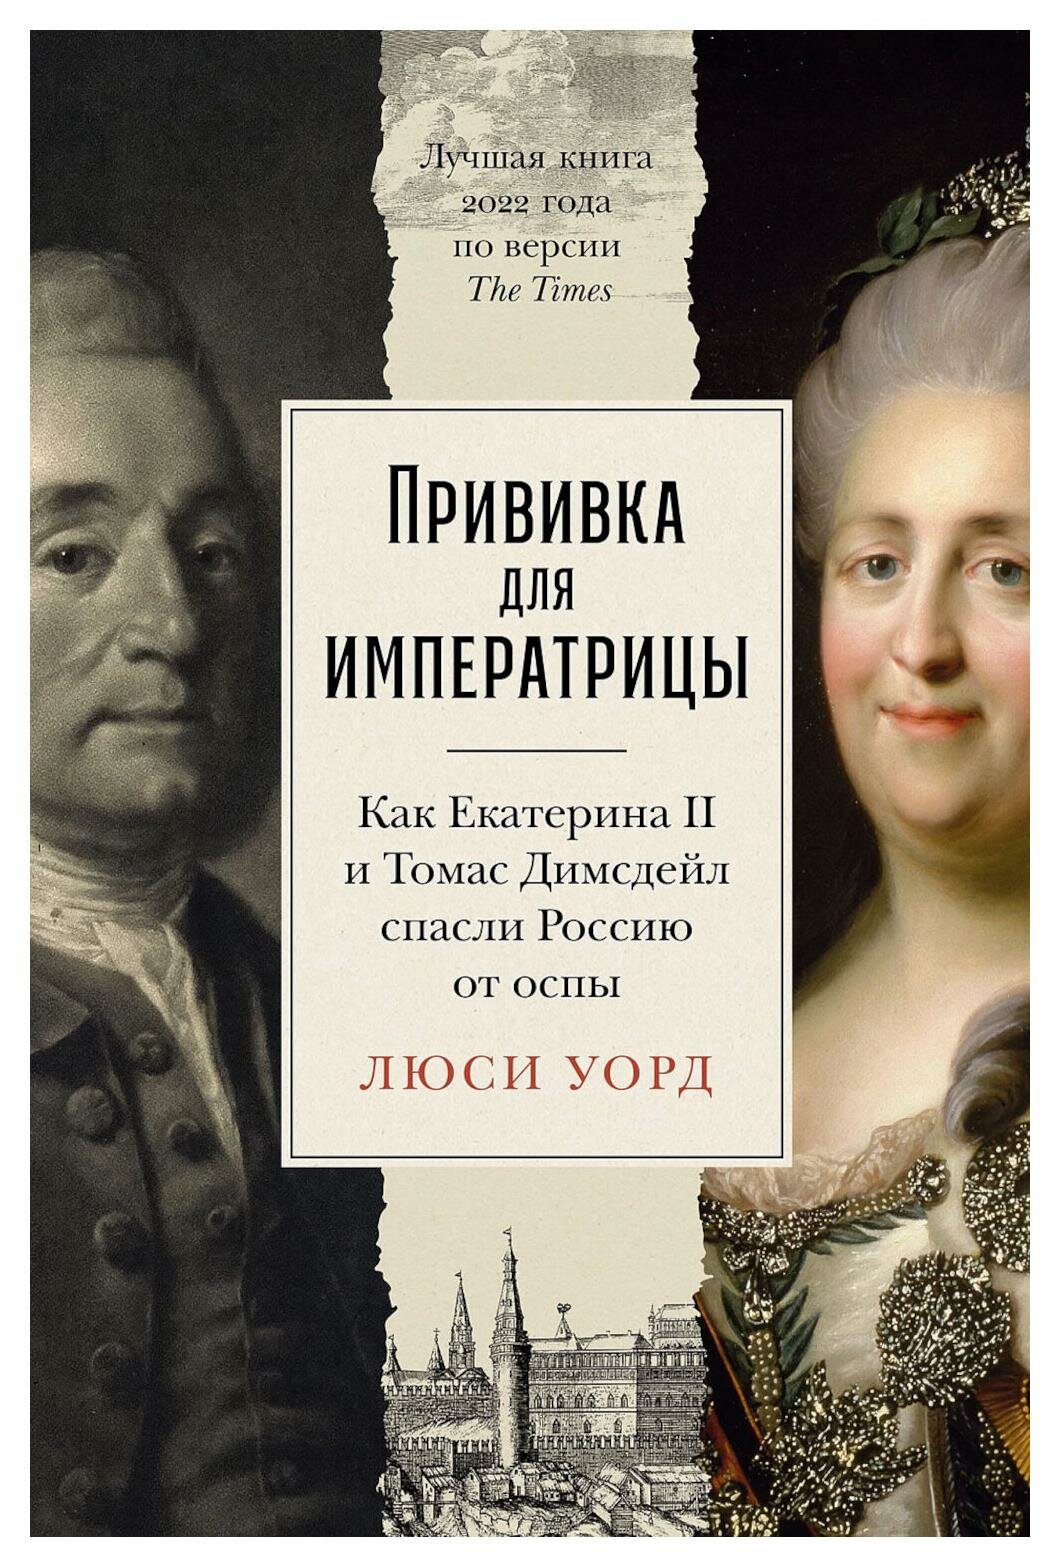 Прививка для императрицы: как Екатерина II и Томас Димсдейл спасли Россию от оспы. Уорд Л. Альпина Паблишер